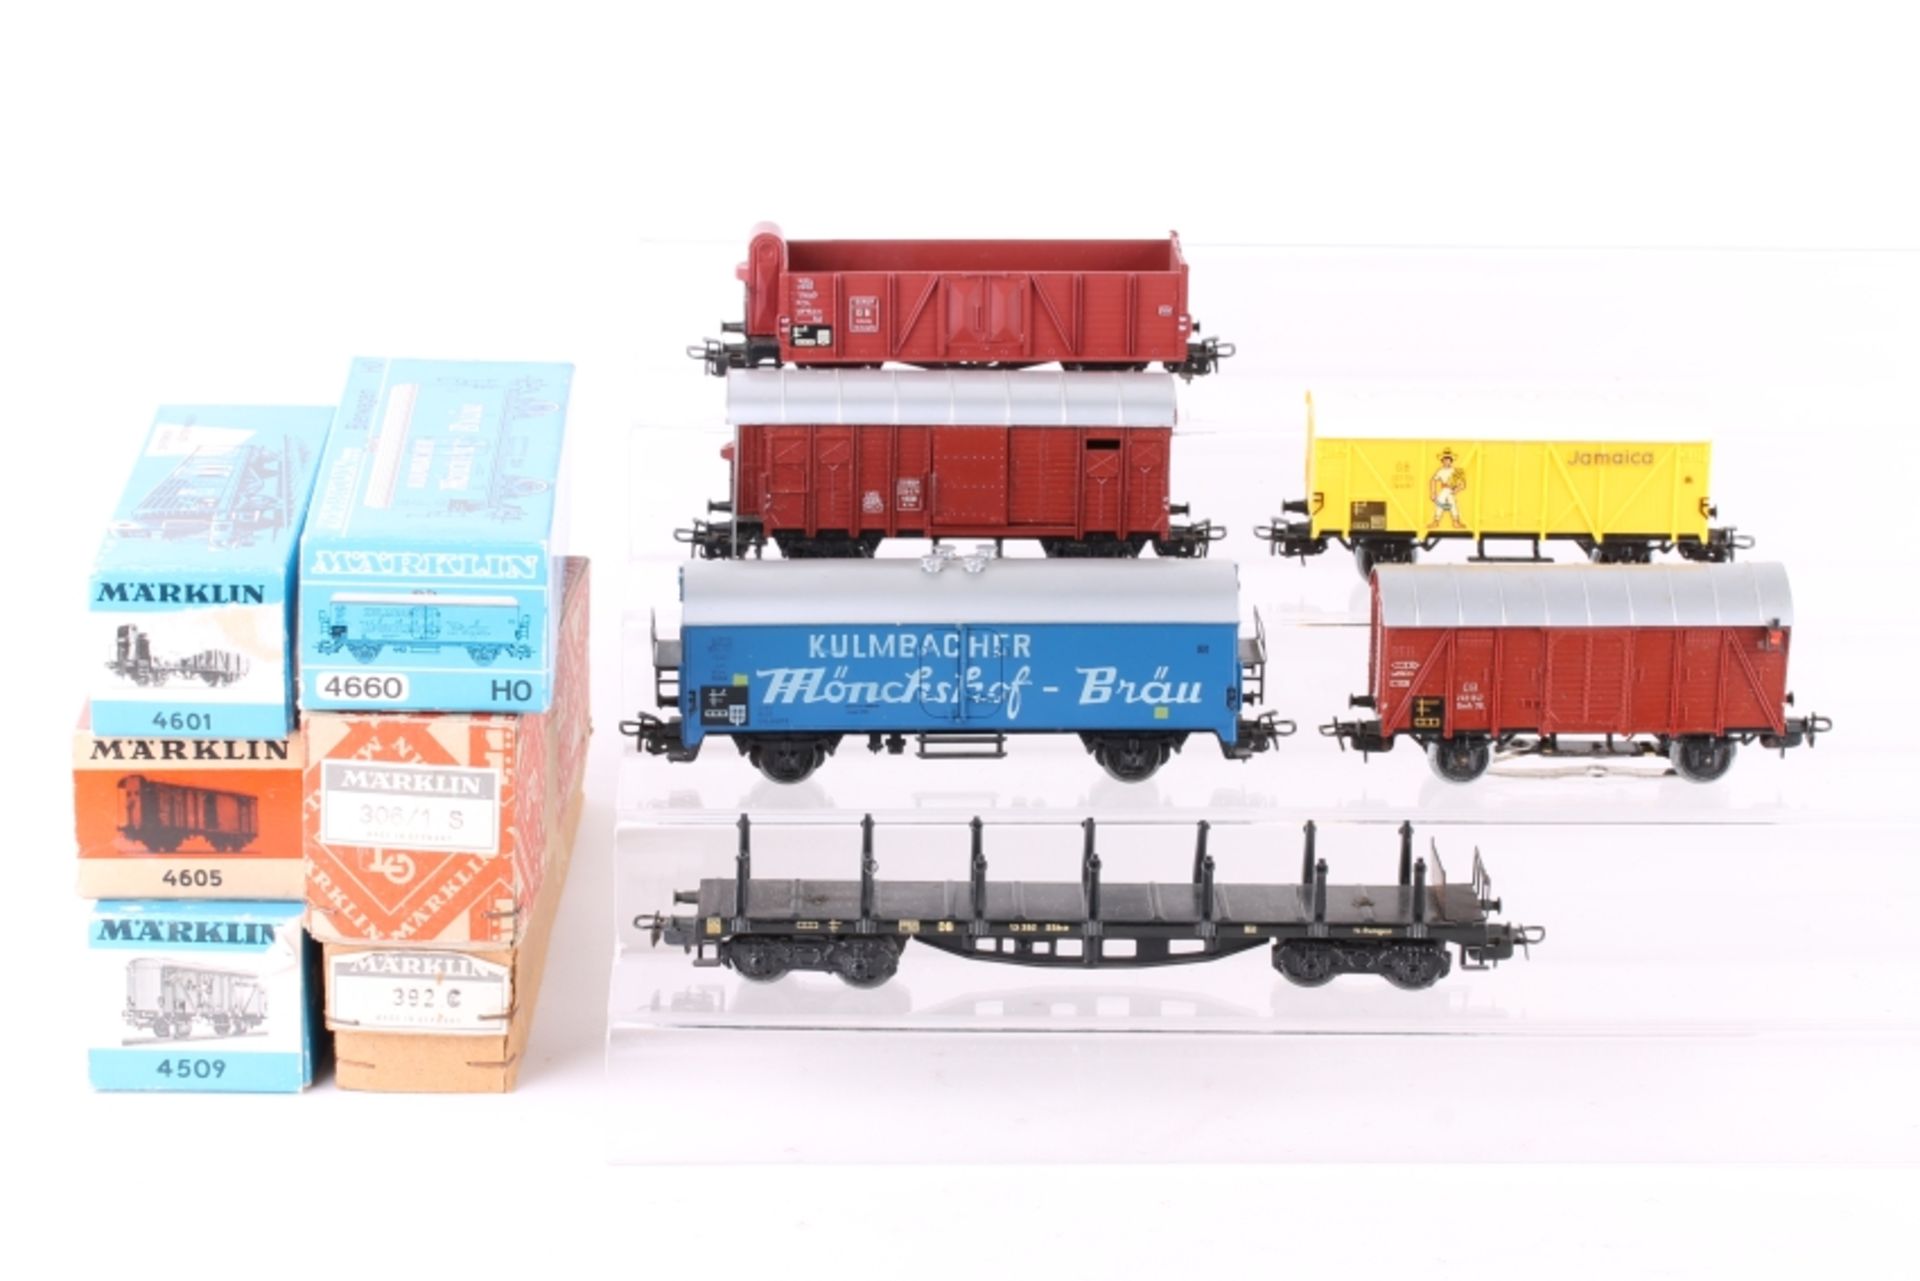 Märklin, sechs Güterwagen Märklin, sechs Güterwagen, 306/1 S (4506), 392 C (4516), 4509, 4601, 4605,